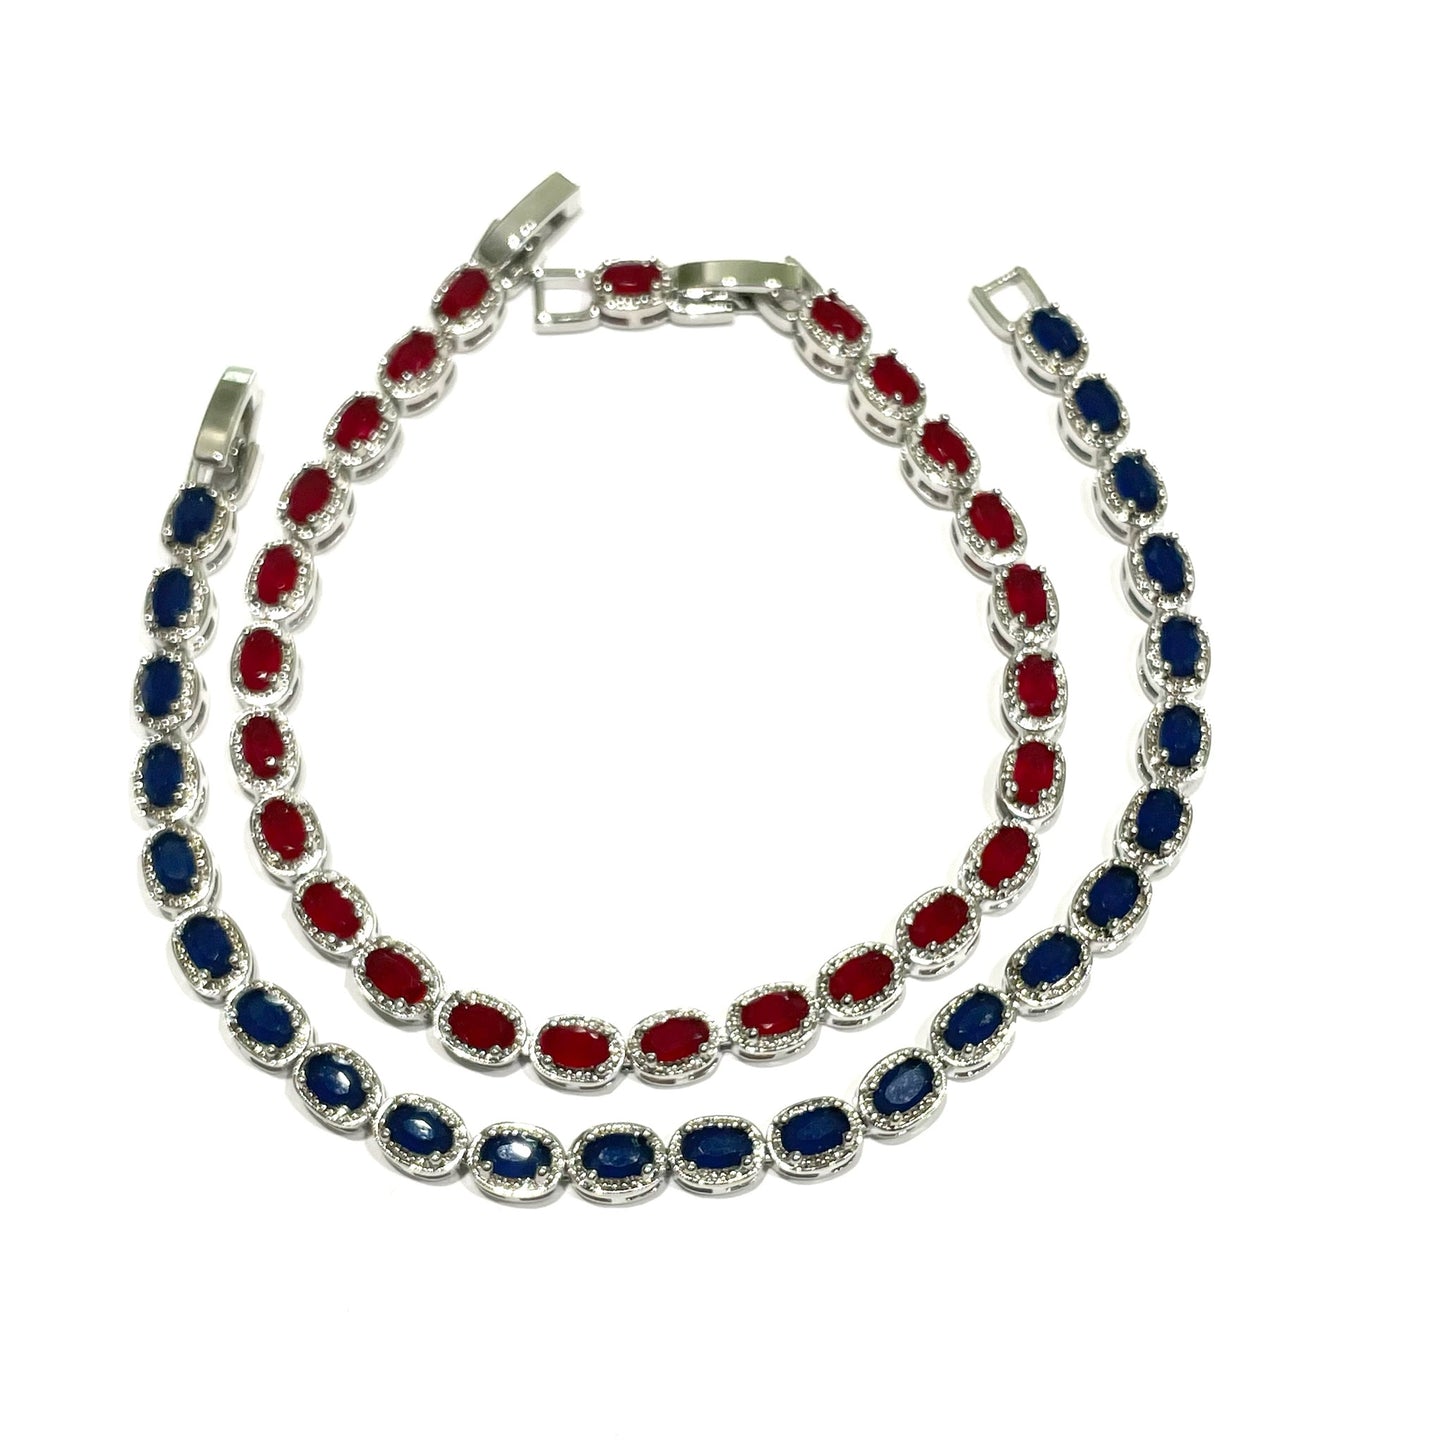 Bracciale argento tennis con zirconi bianchi e colore rubino/zaffiro